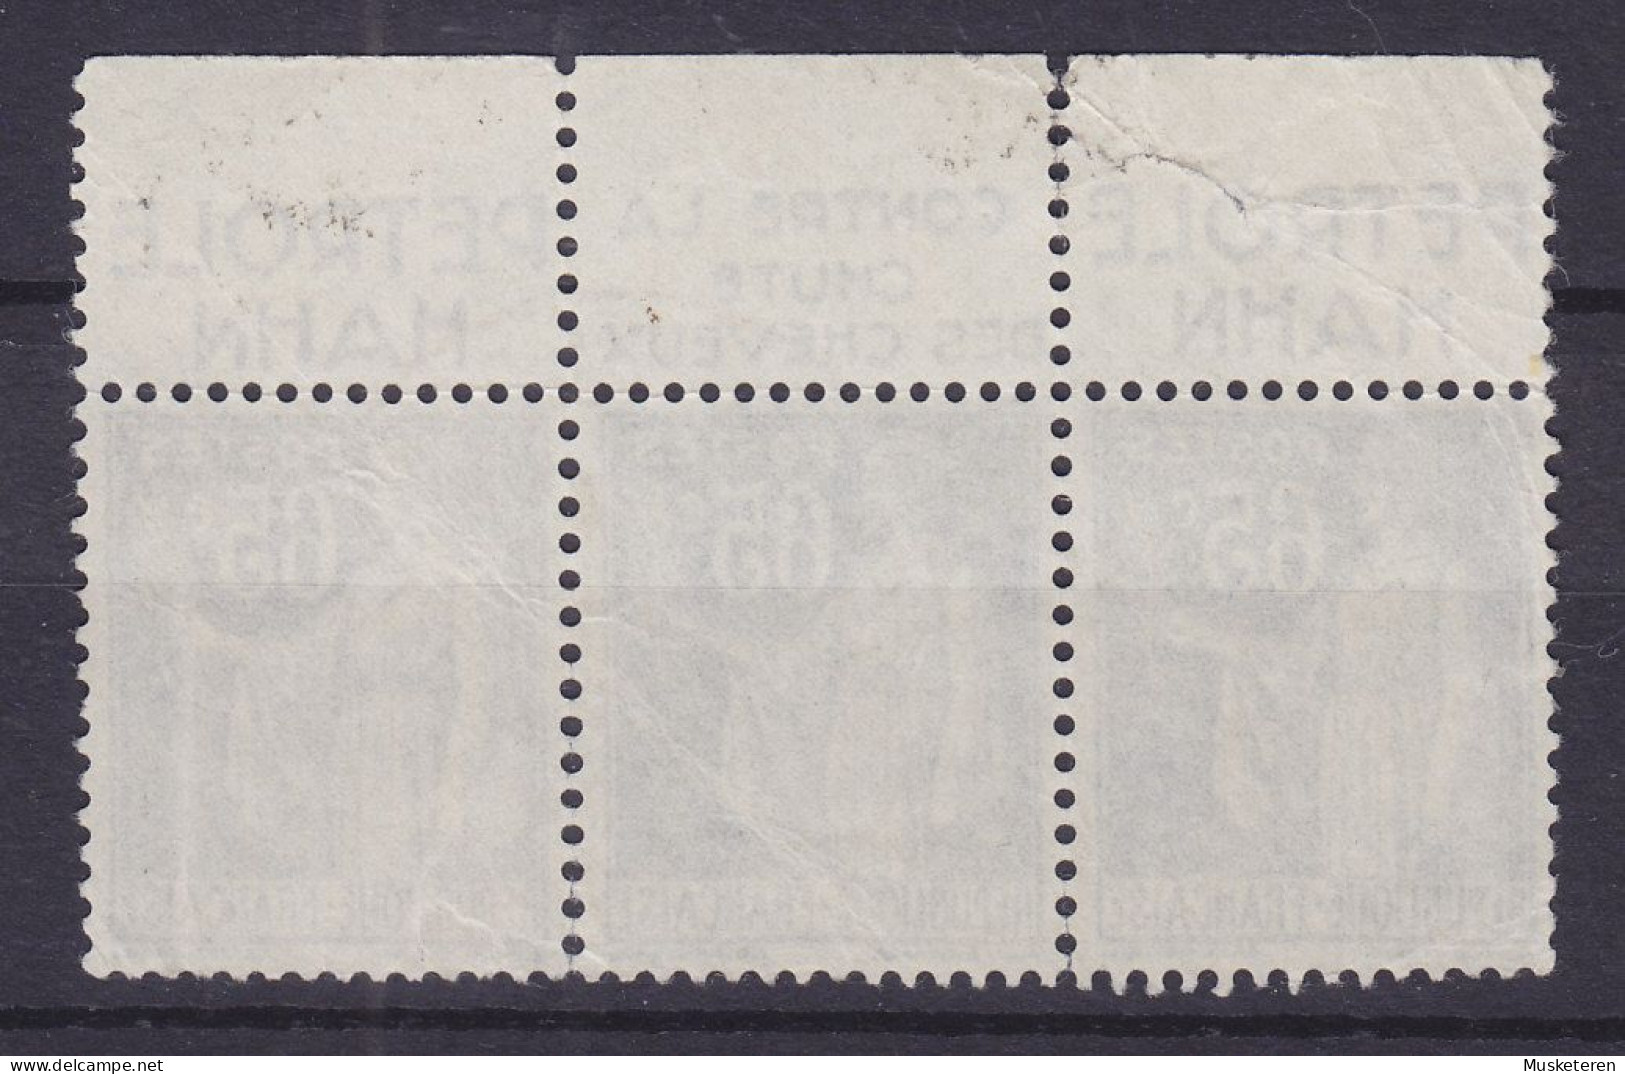 France Mi. 365, Paix Avec Bande Pub. 'Petrole Hahn & Contre La Chute Des Cheveux' 3-Stripe (2 Scans) - Used Stamps